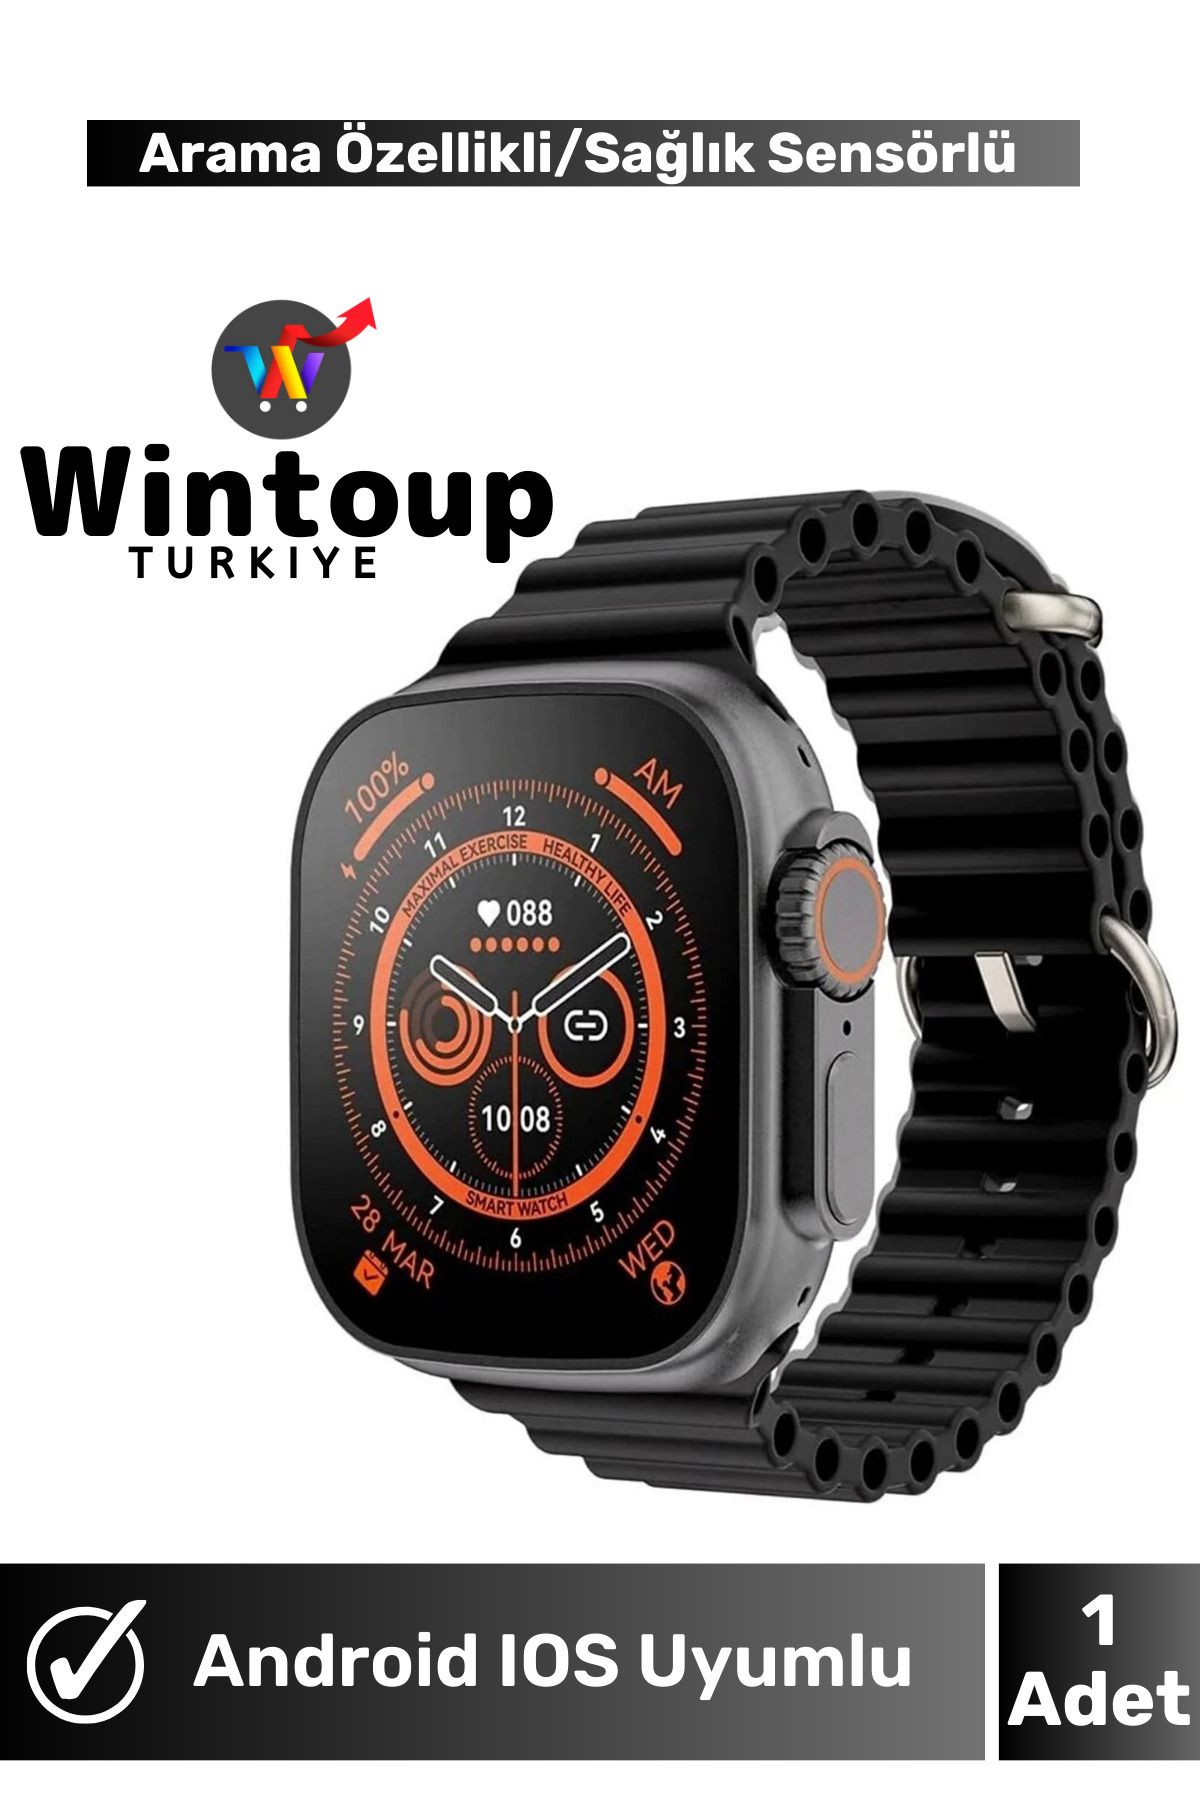 Wintoup XİAOMİ Modellere Uyumlu Kadın Erkek Smartwatch Çağrı Destekli Akıllı Saat